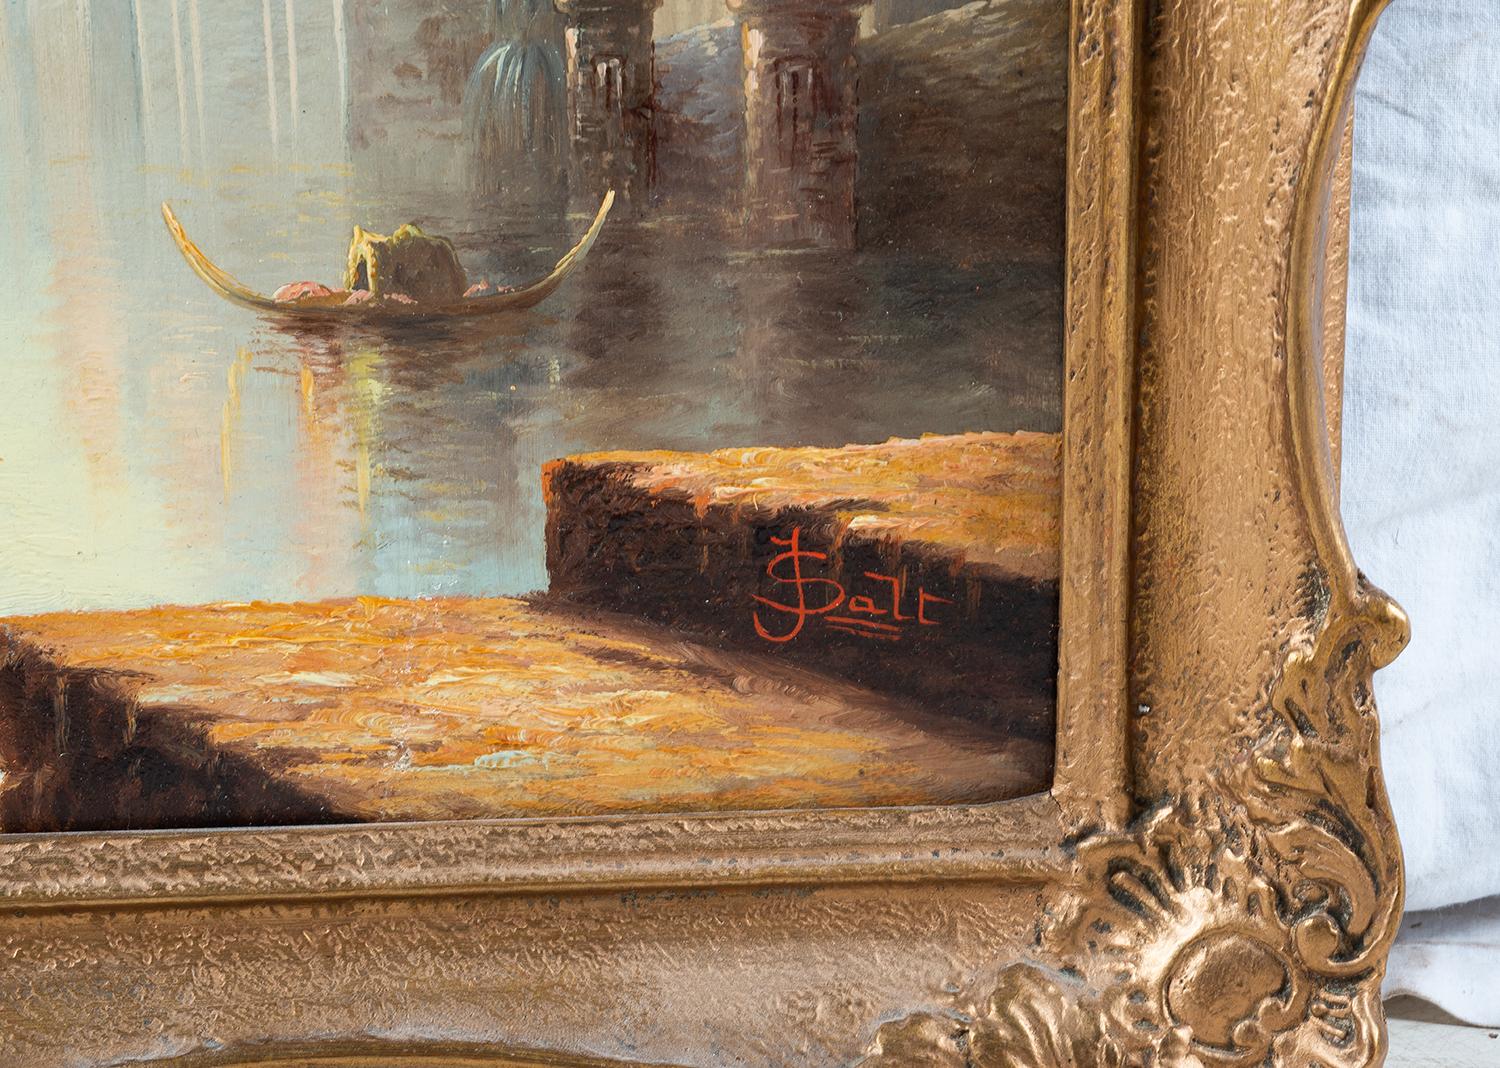 Italian Oil on Canvas by James Salt of 'Venetian Capriccio' 1883